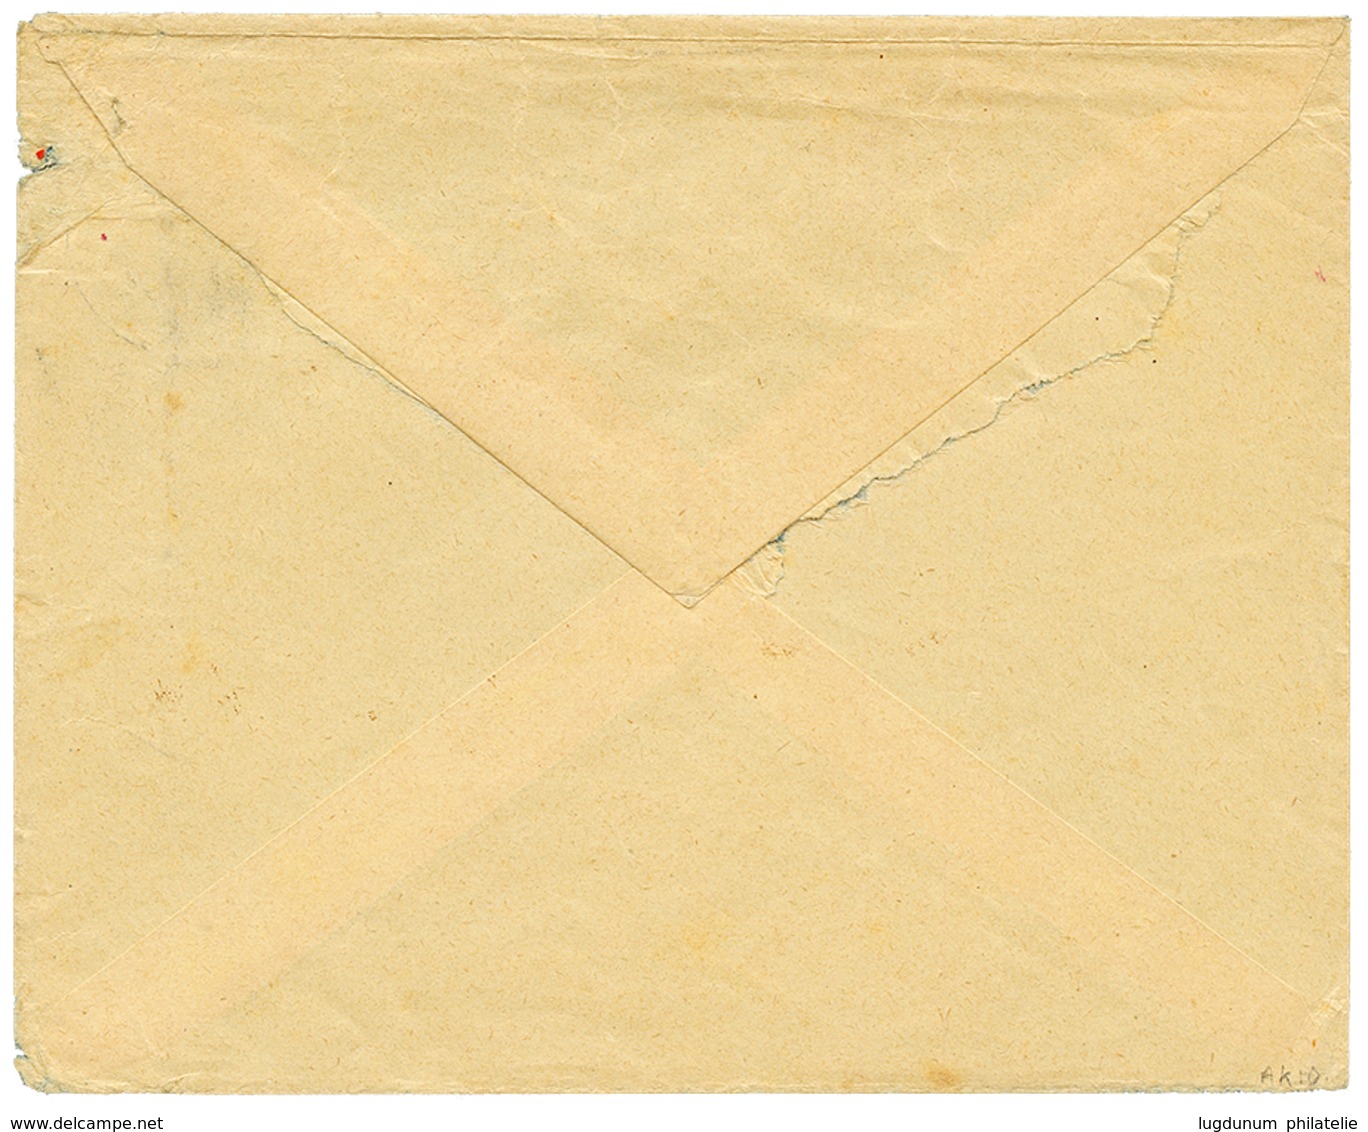 1069 1910 4h(x2) Canc. TAVETA DEUTSCHE FELDPOST + Red Cachet ZENZUR PASSIERT DEUTSCH OSTAFRIKA On Envelope To BERLIN. Vf - Deutsche Post In China